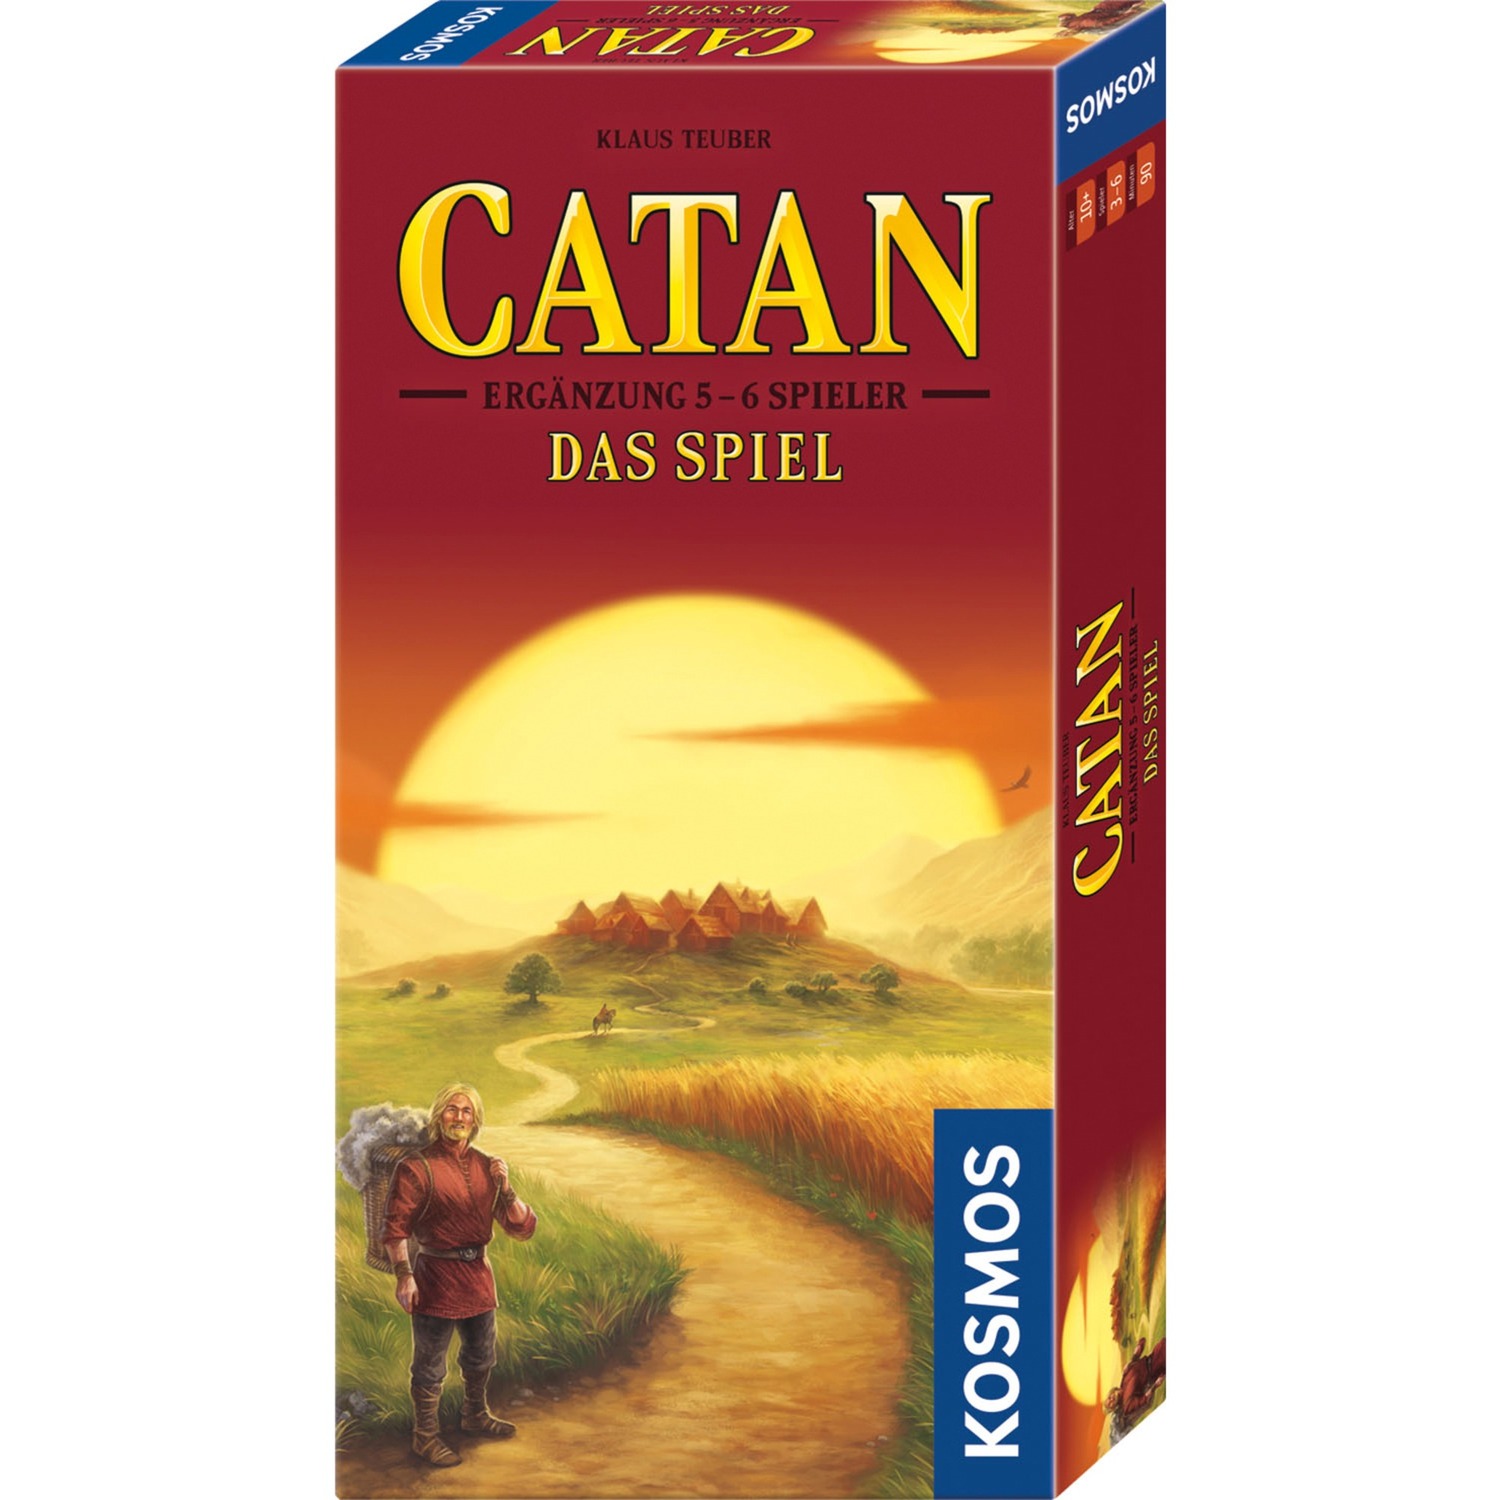 CATAN - Ergänzung für 5-6 Spieler, Brettspiel von Kosmos